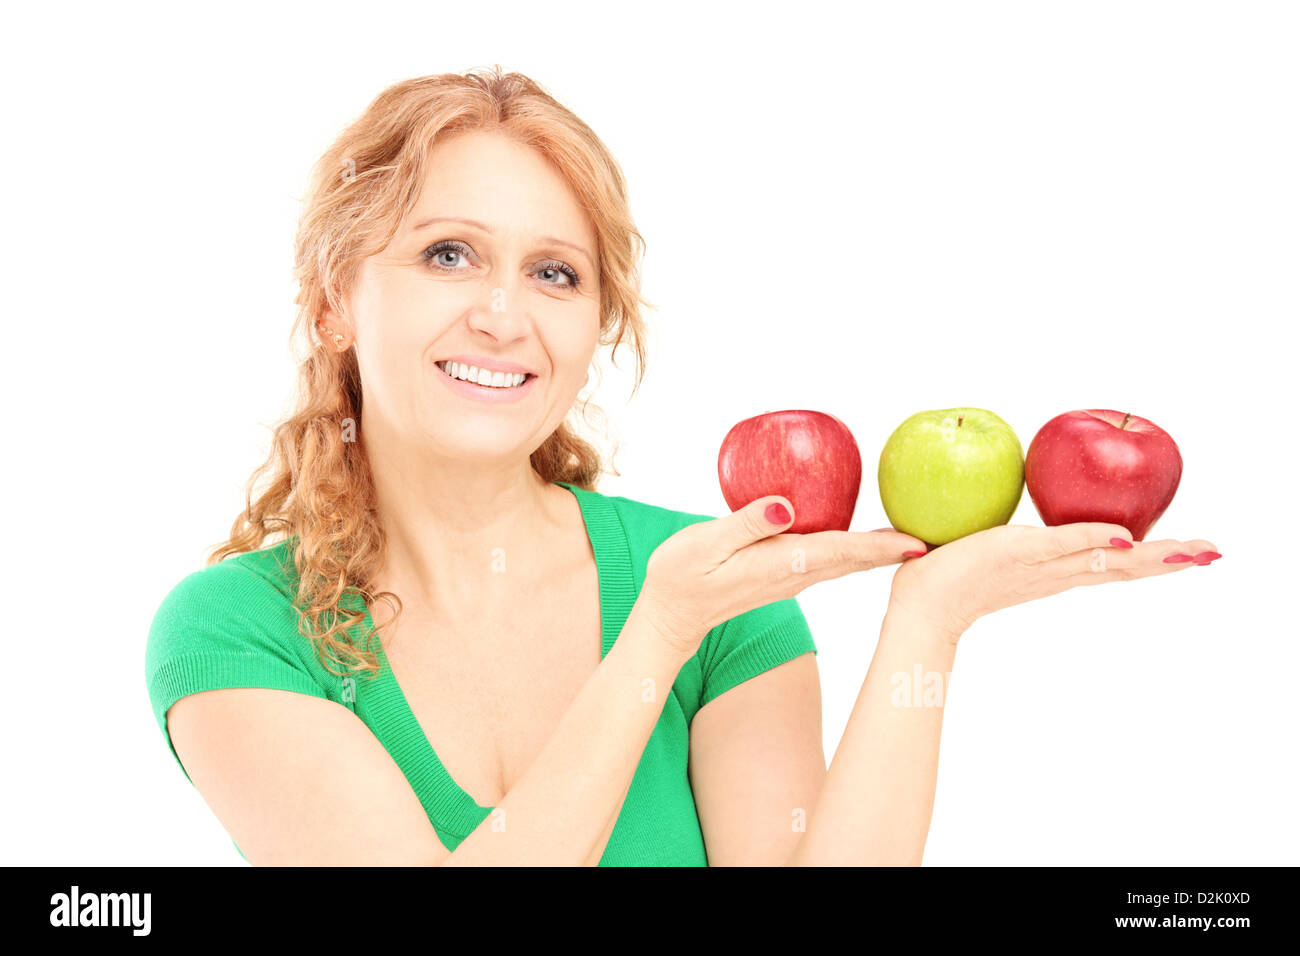 Reife schöne Frau sitzt und hält drei Äpfel isoliert auf weißem Hintergrund Stockfoto